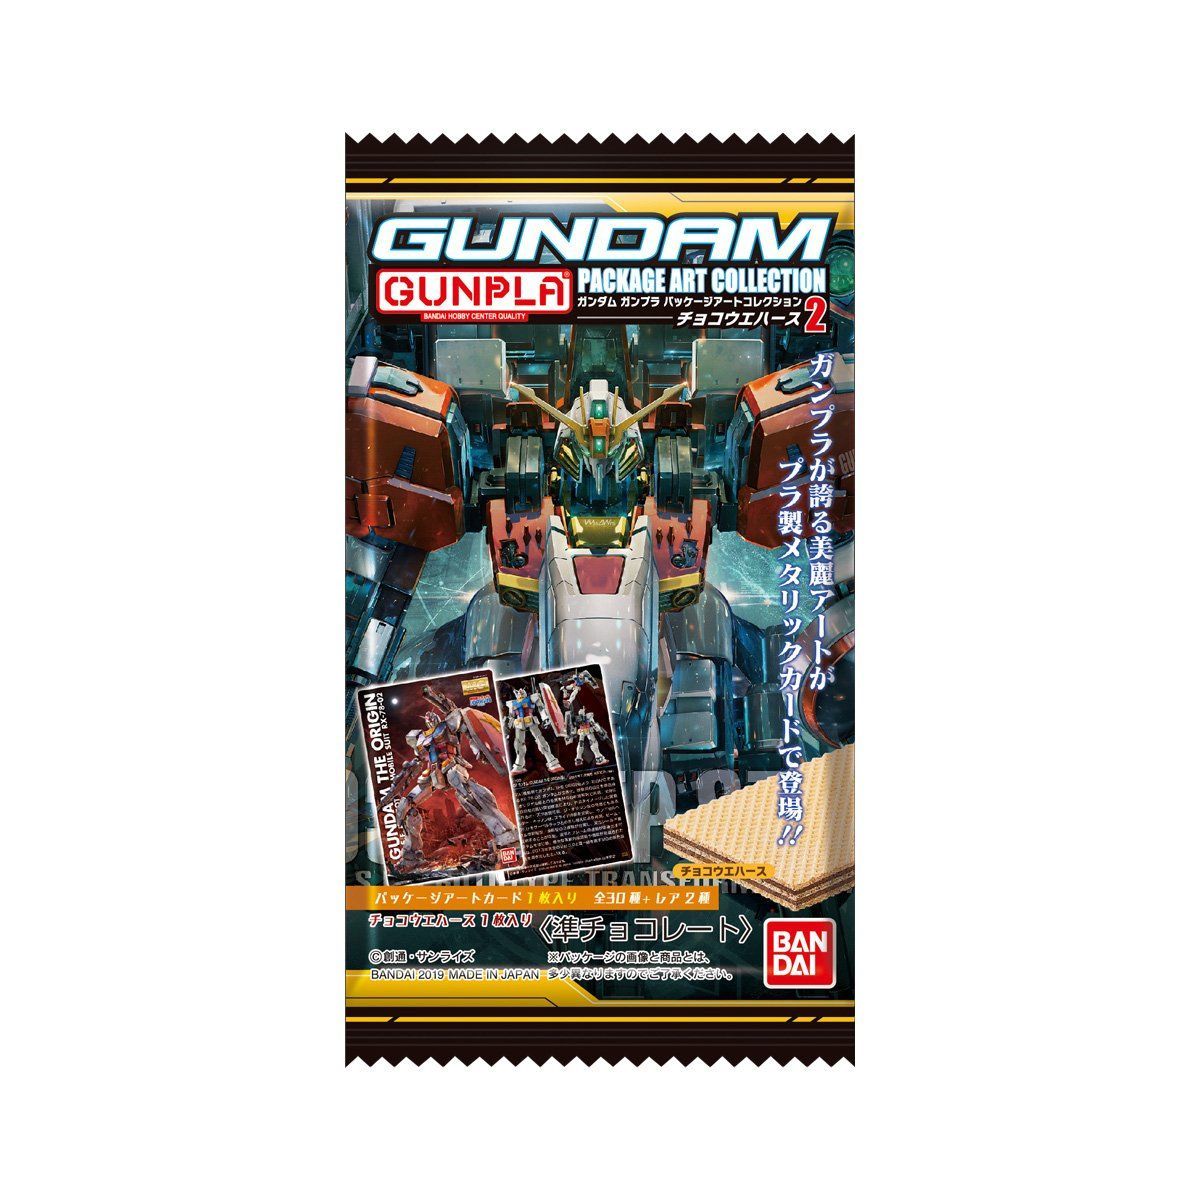 【食玩】『GUNDAMガンプラパッケージアートコレクション チョコウエハース2』20個入りBOX-001